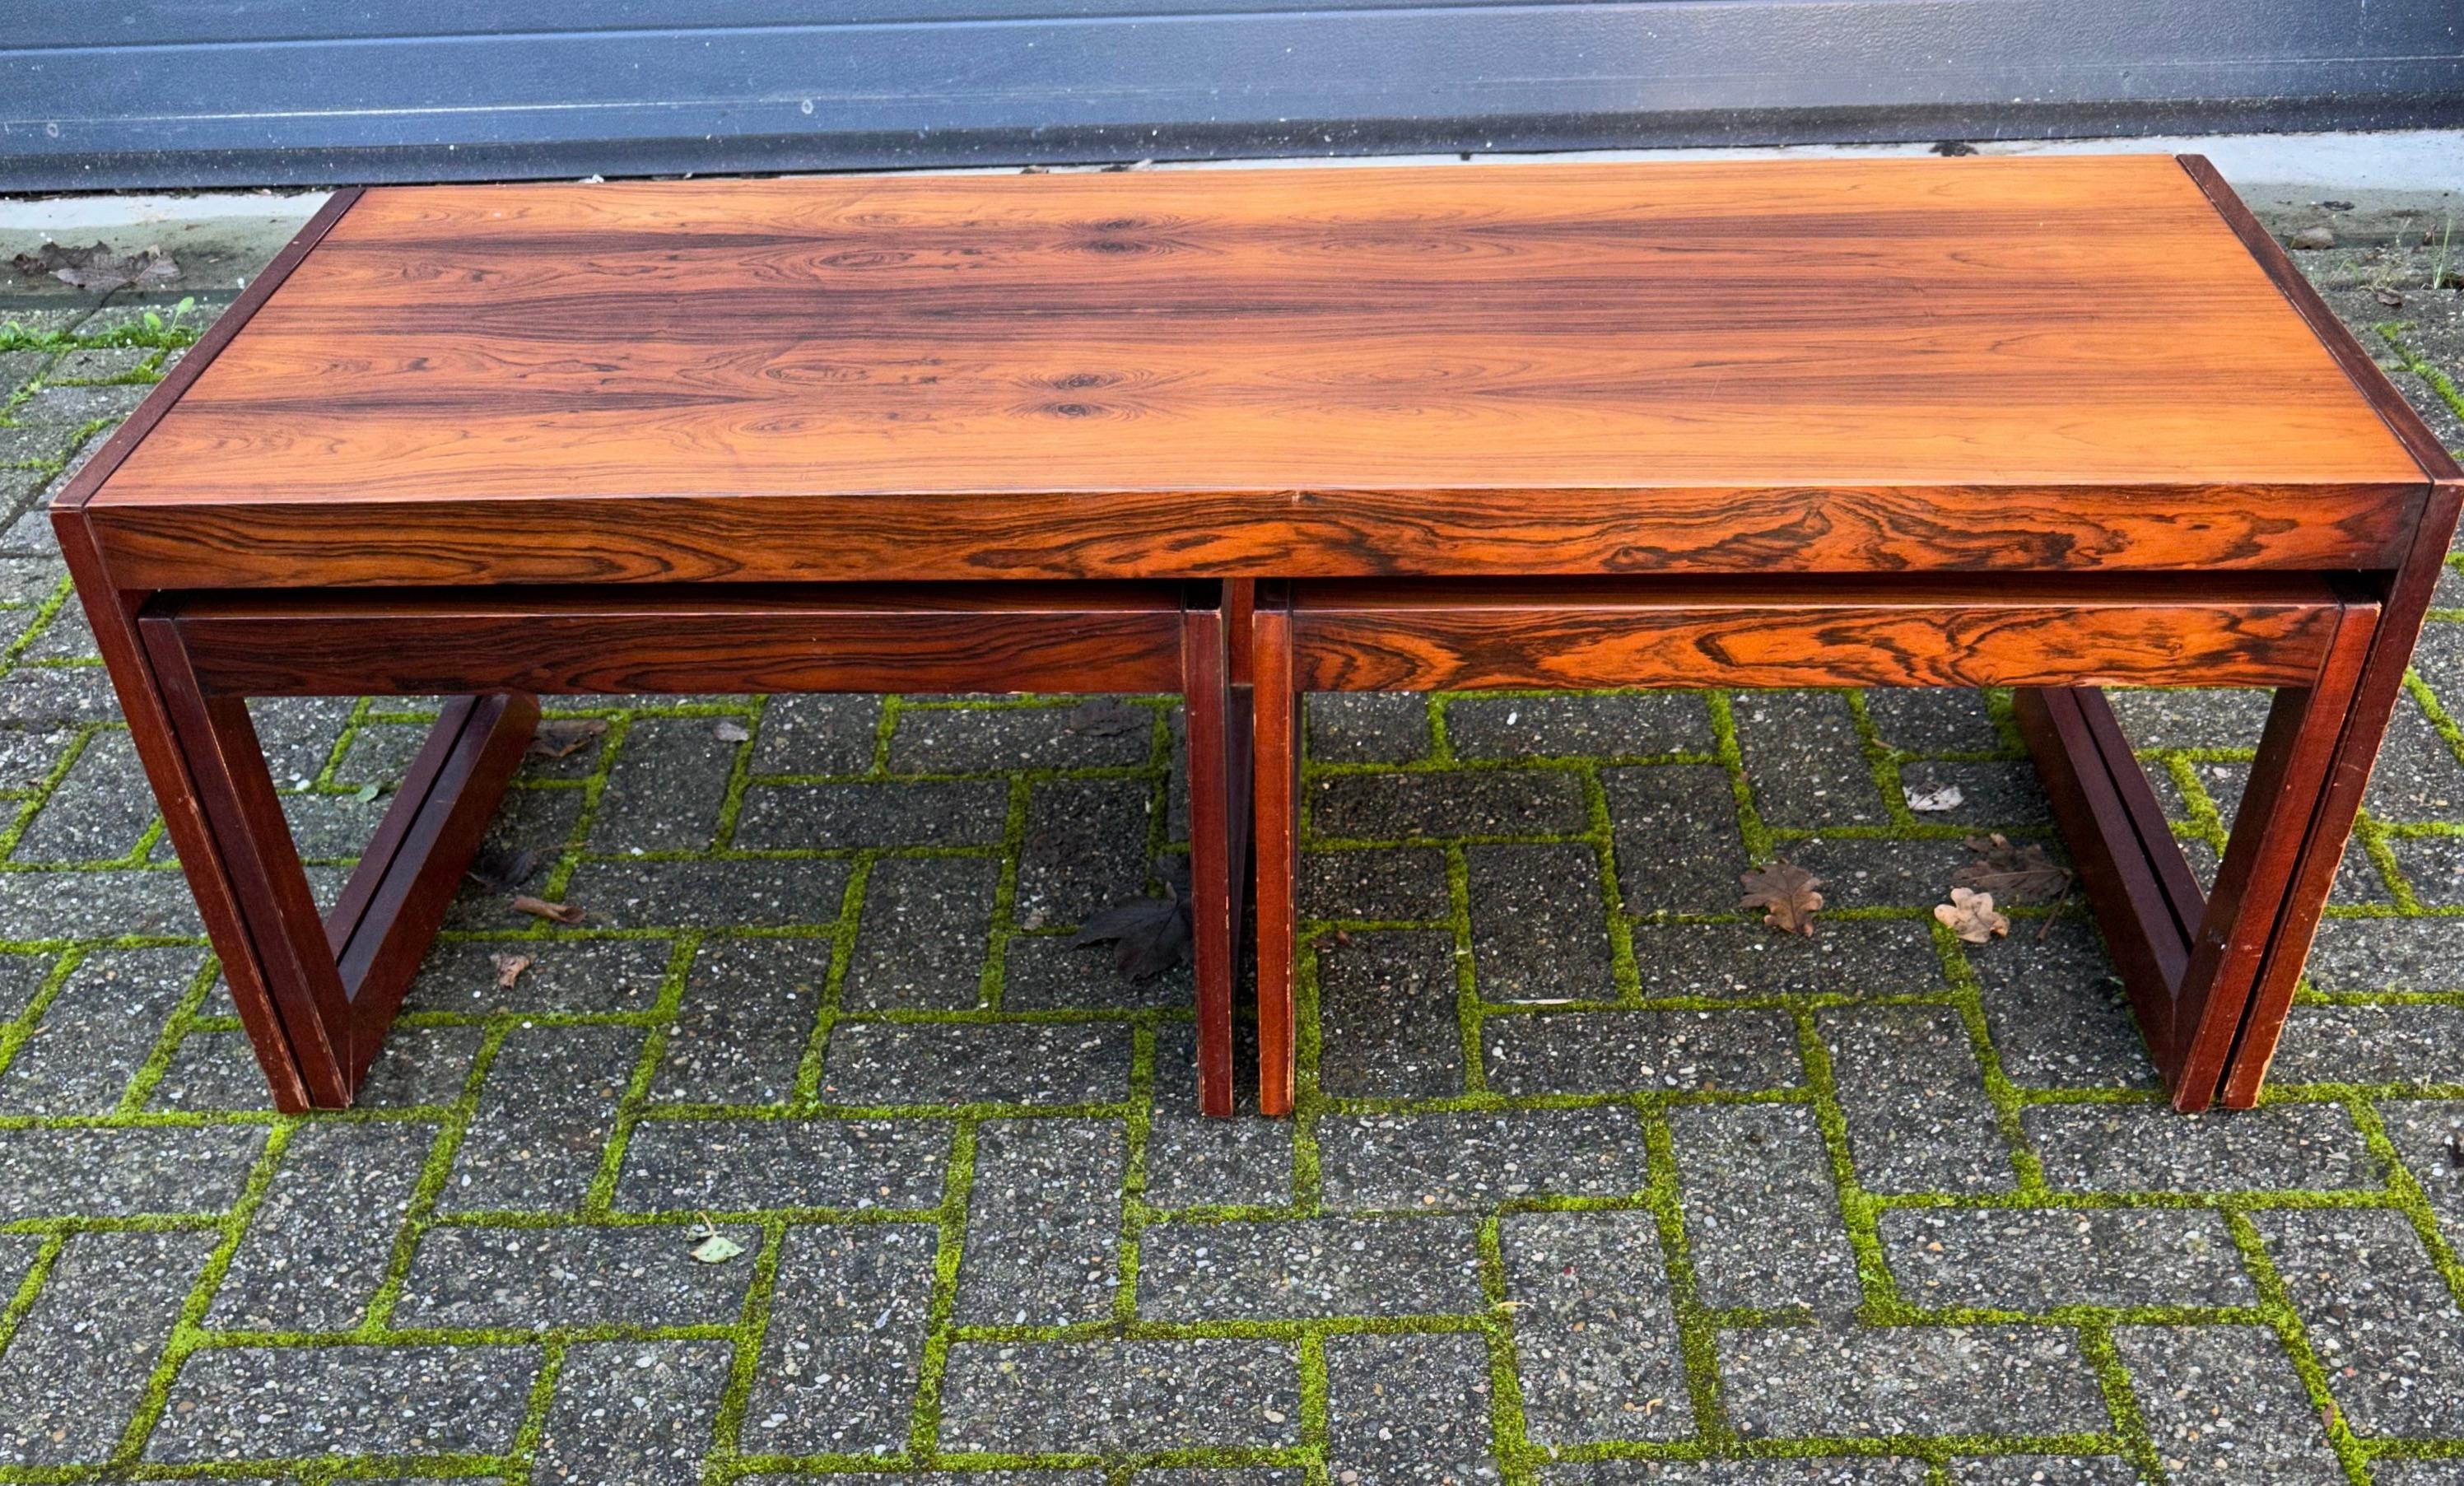 Superbe table basse en bois du milieu du siècle dernier, fabriquée avec la plus grande qualité, et une paire de tables d'appoint. 

Si vous êtes à la recherche d'une table basse élégante, magnifiquement fabriquée et très décorative pour votre